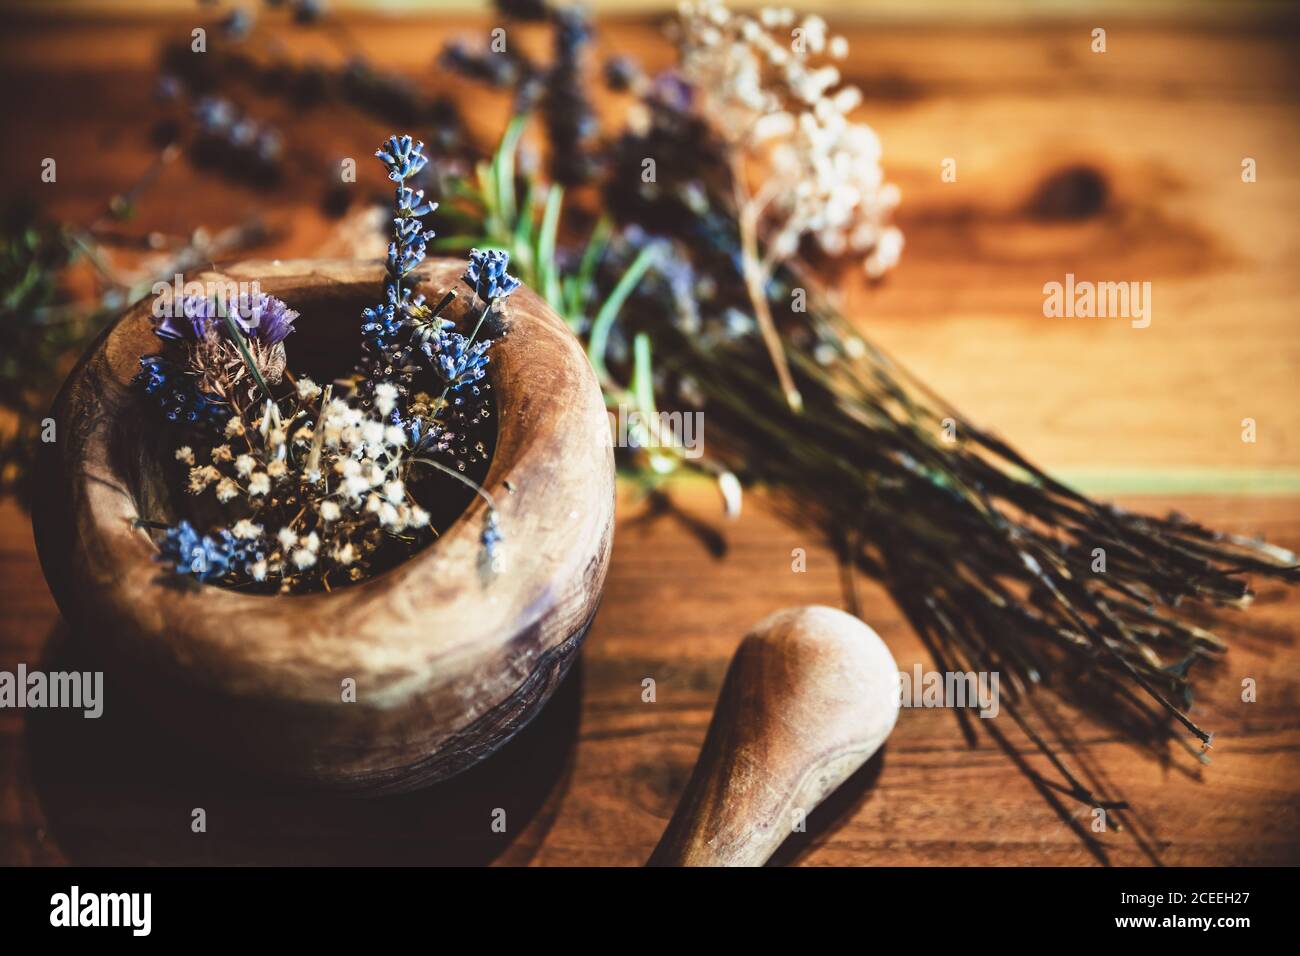 Rituelle Reinigung und Reinigung mit getrockneten Heilkräutern und Blumen, natürlicher Hintergrund Stockfoto